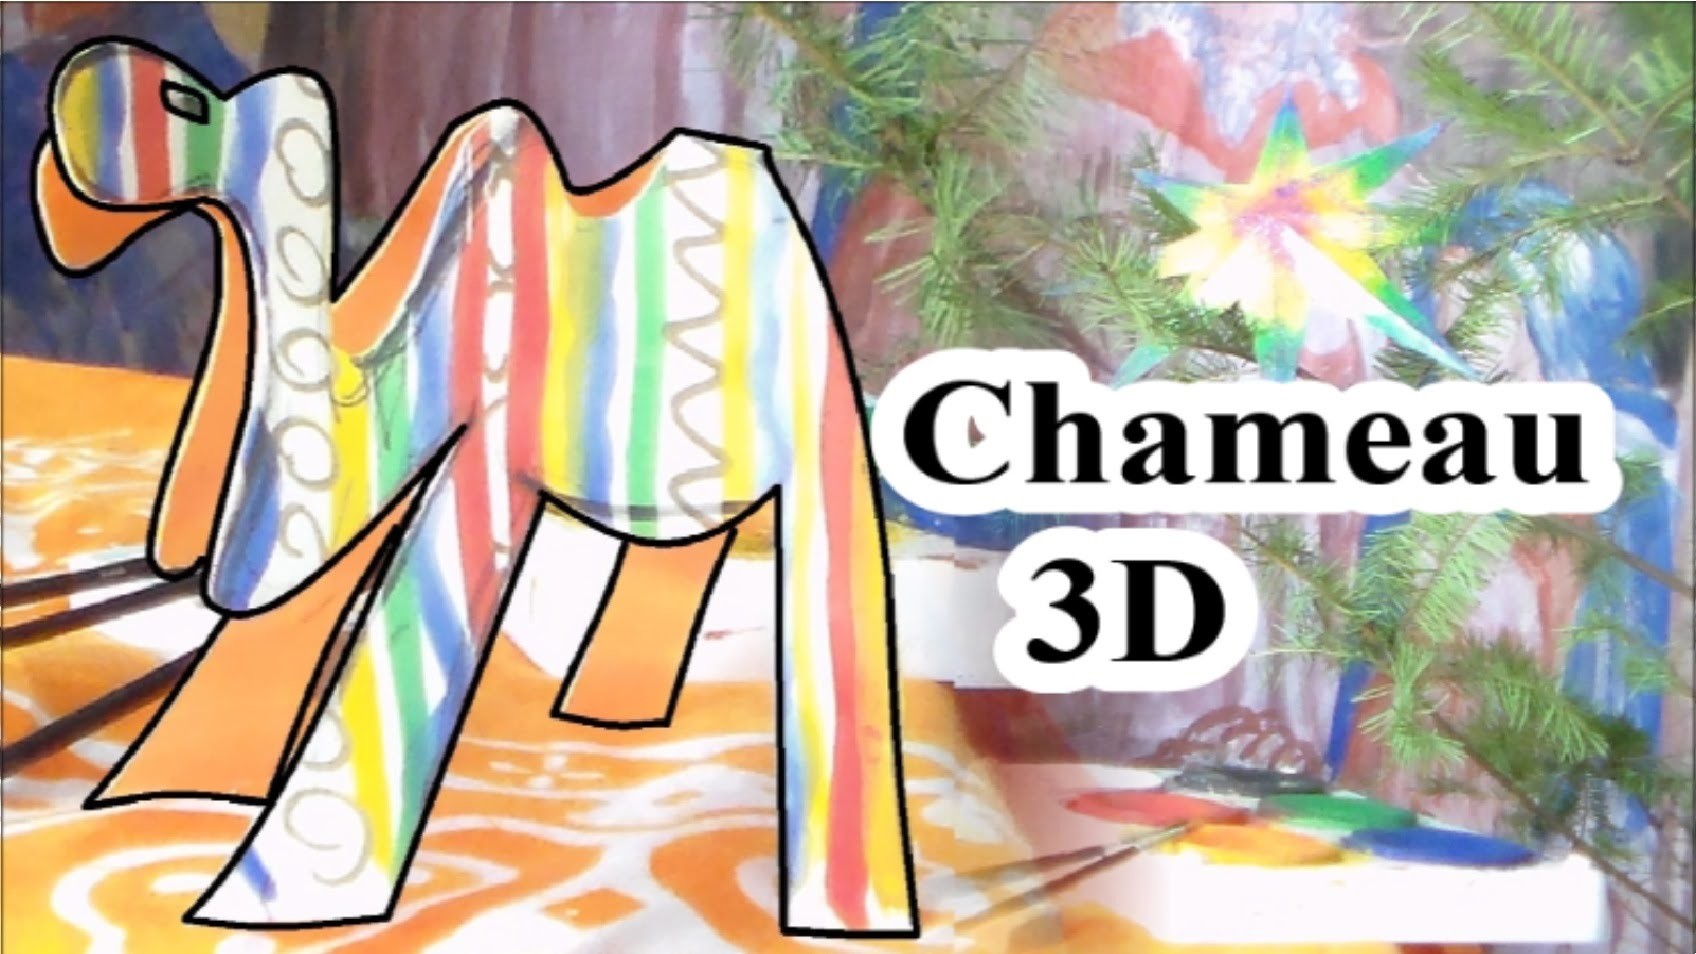 Faire un chameau 3D en papier : Activité ludique de bricolage